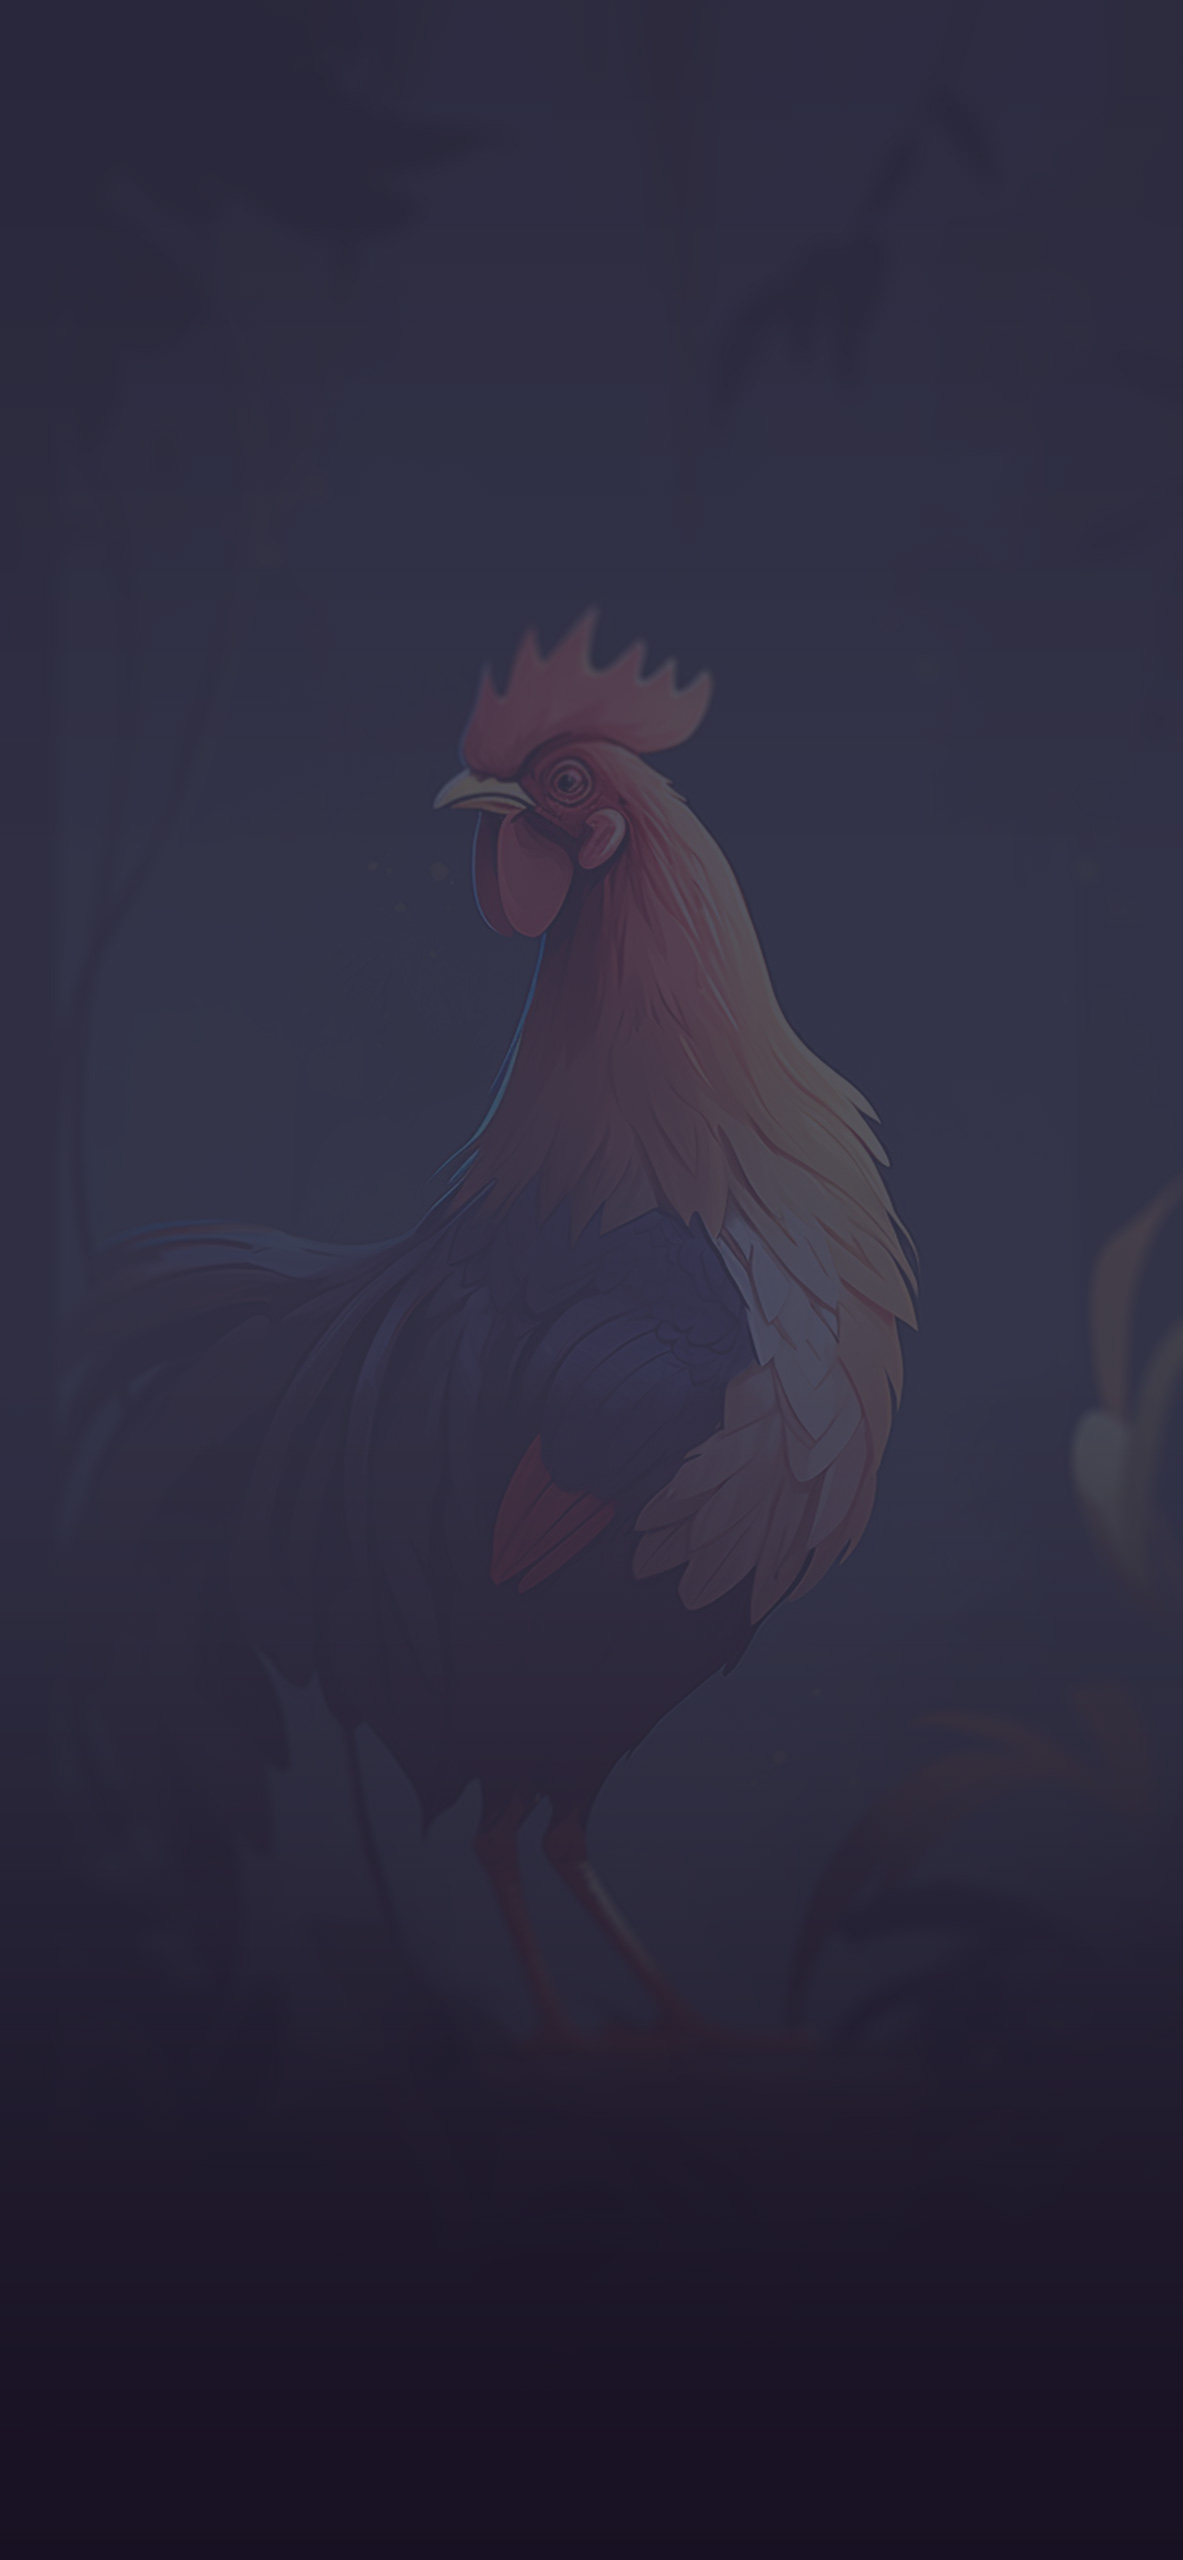 rooster dark background